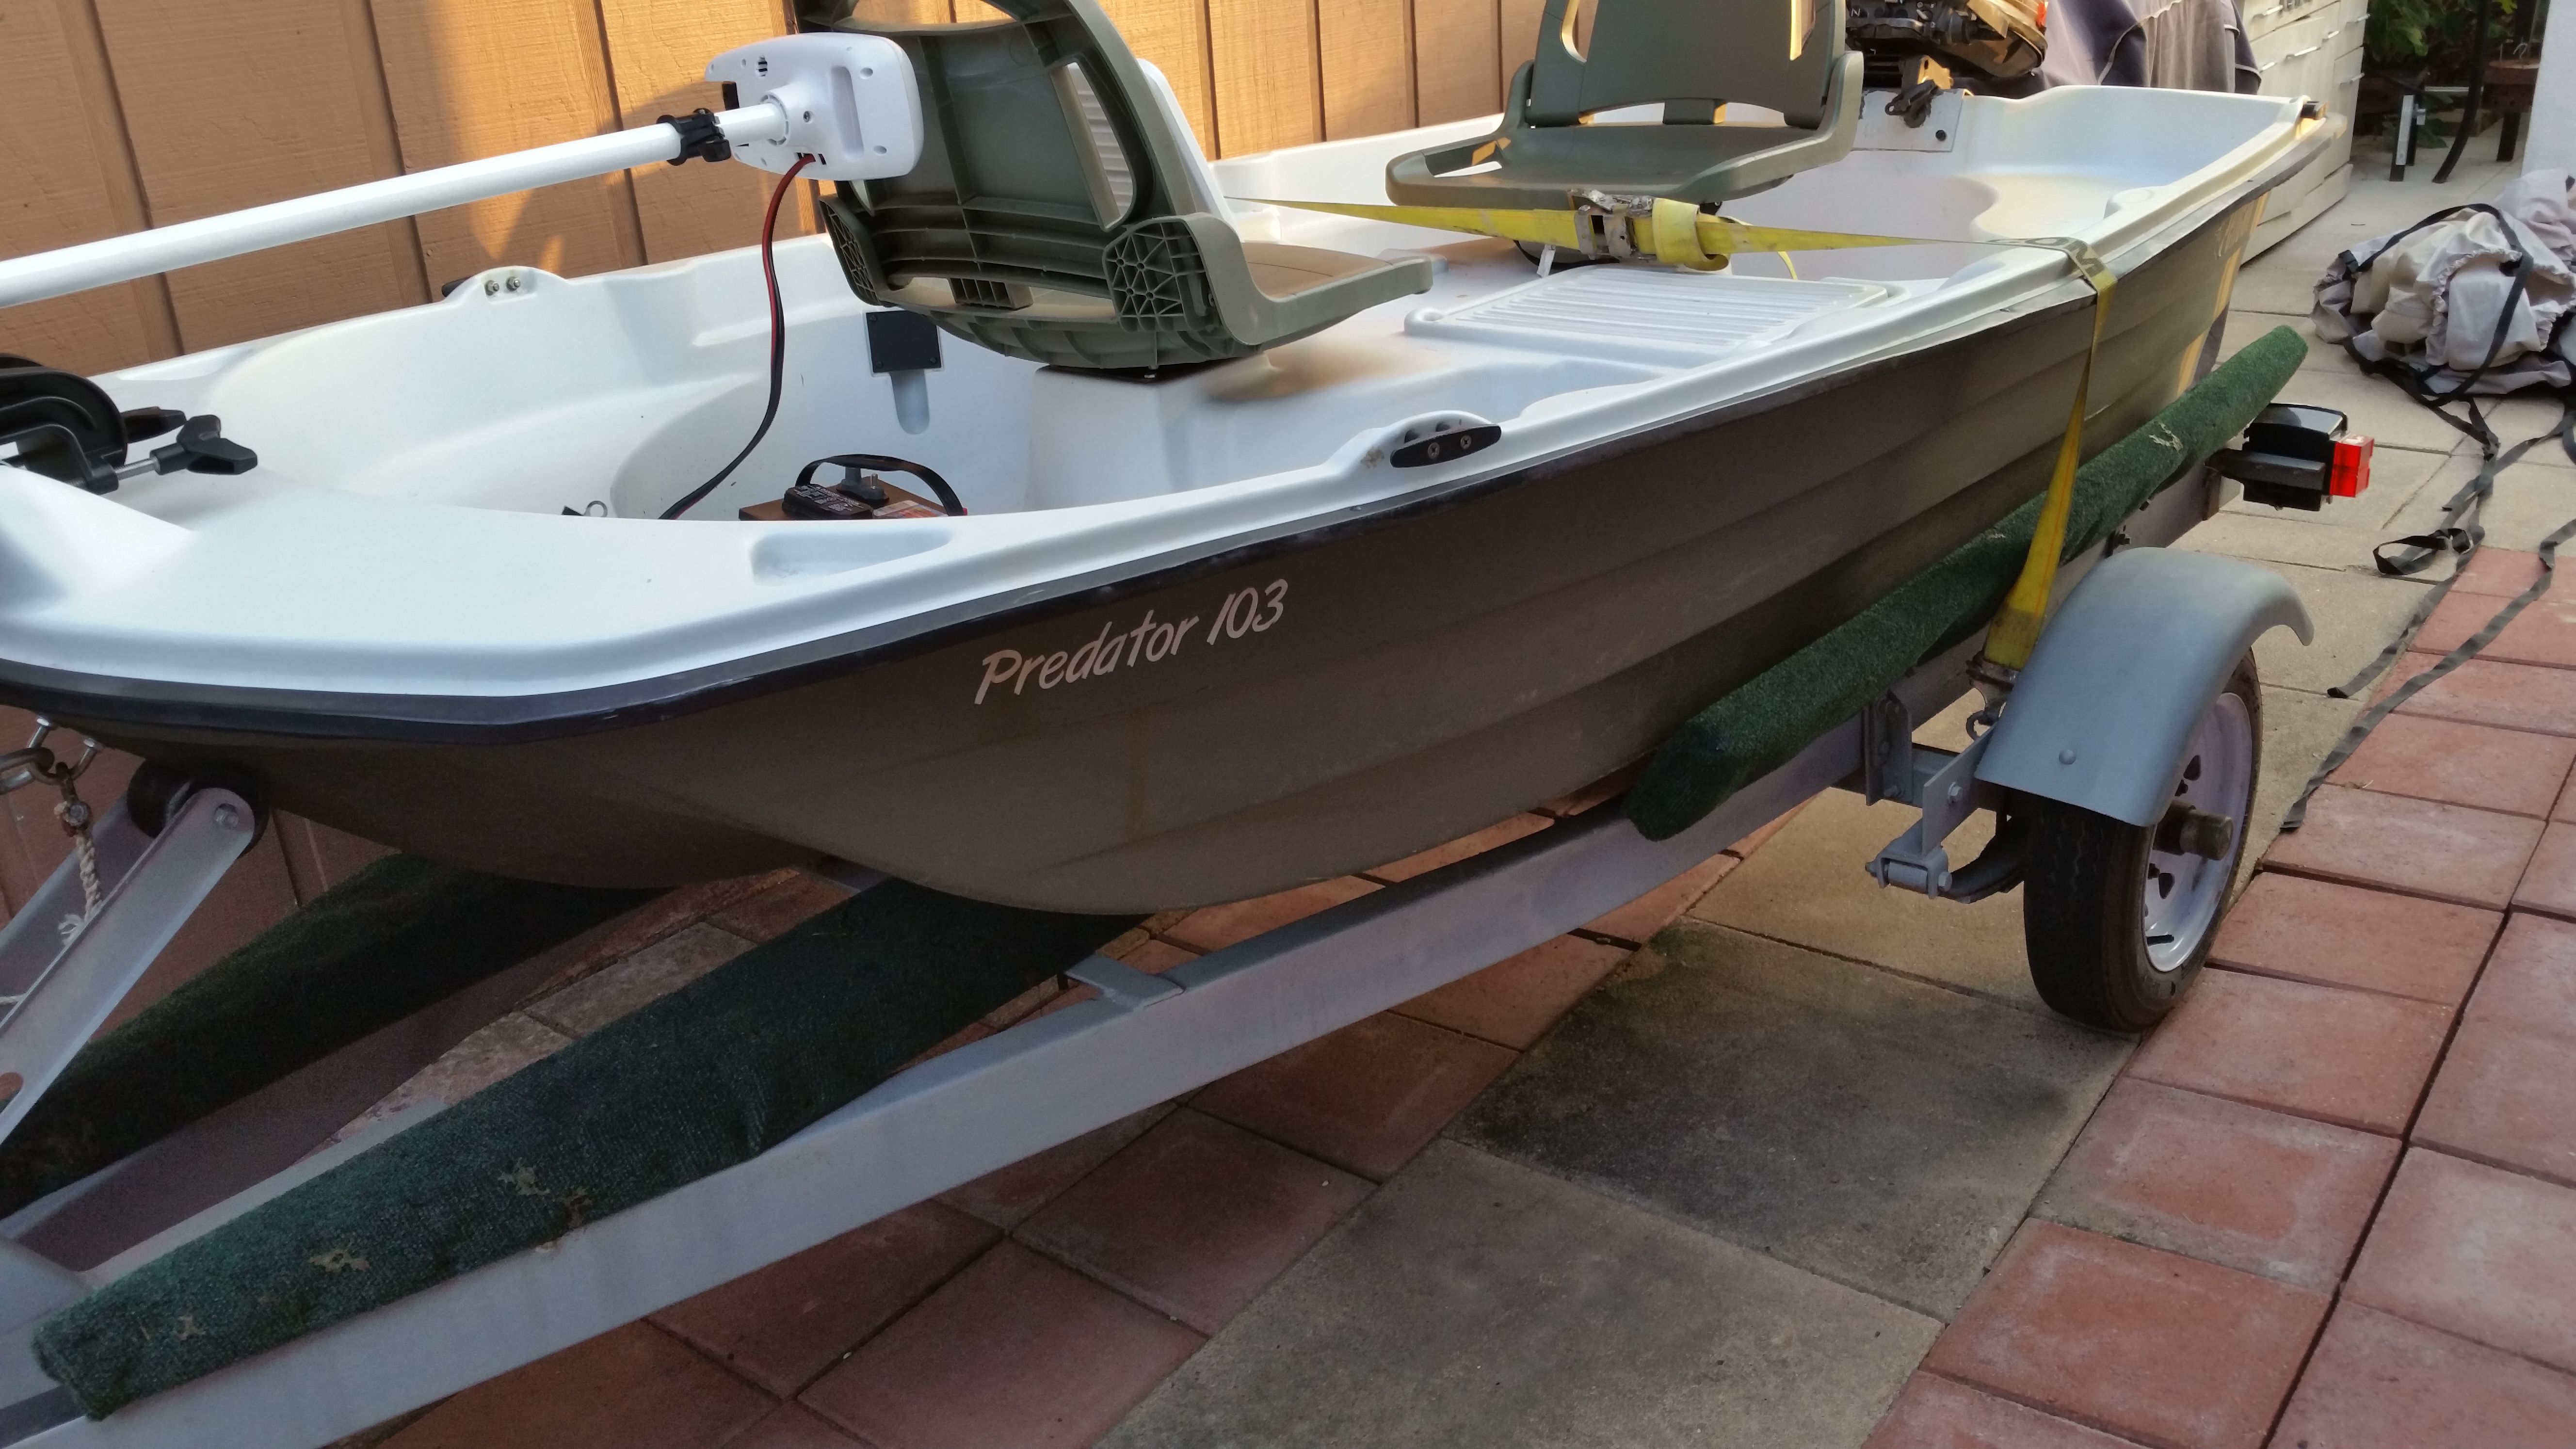 Pelican Predator 103 boat, 5hp motor, trailer, trolling motor for